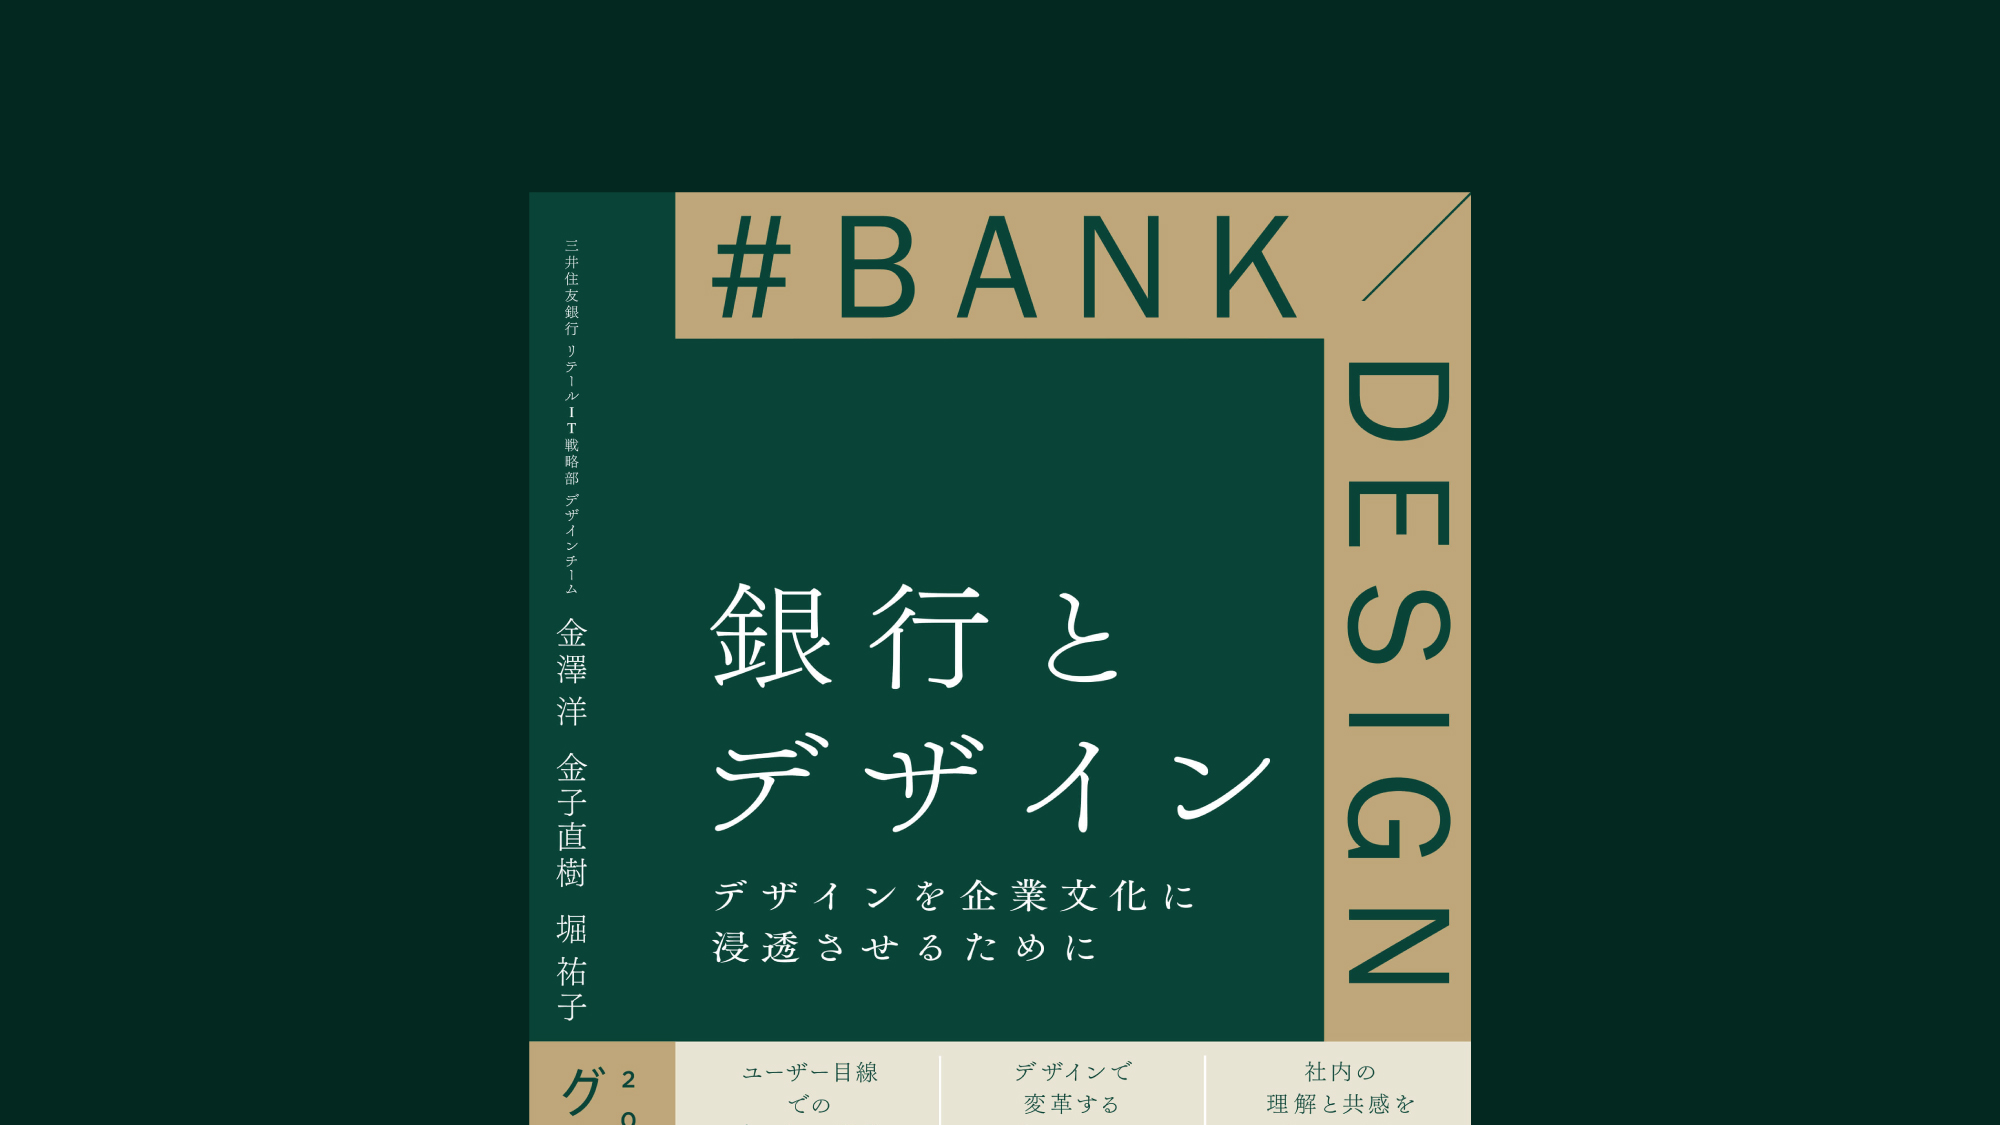 三井住友銀行のインハウスデザイナーによるデザイン改革の全貌を記した『銀行とデザイン デザインを企業文化に浸透させるために』発売